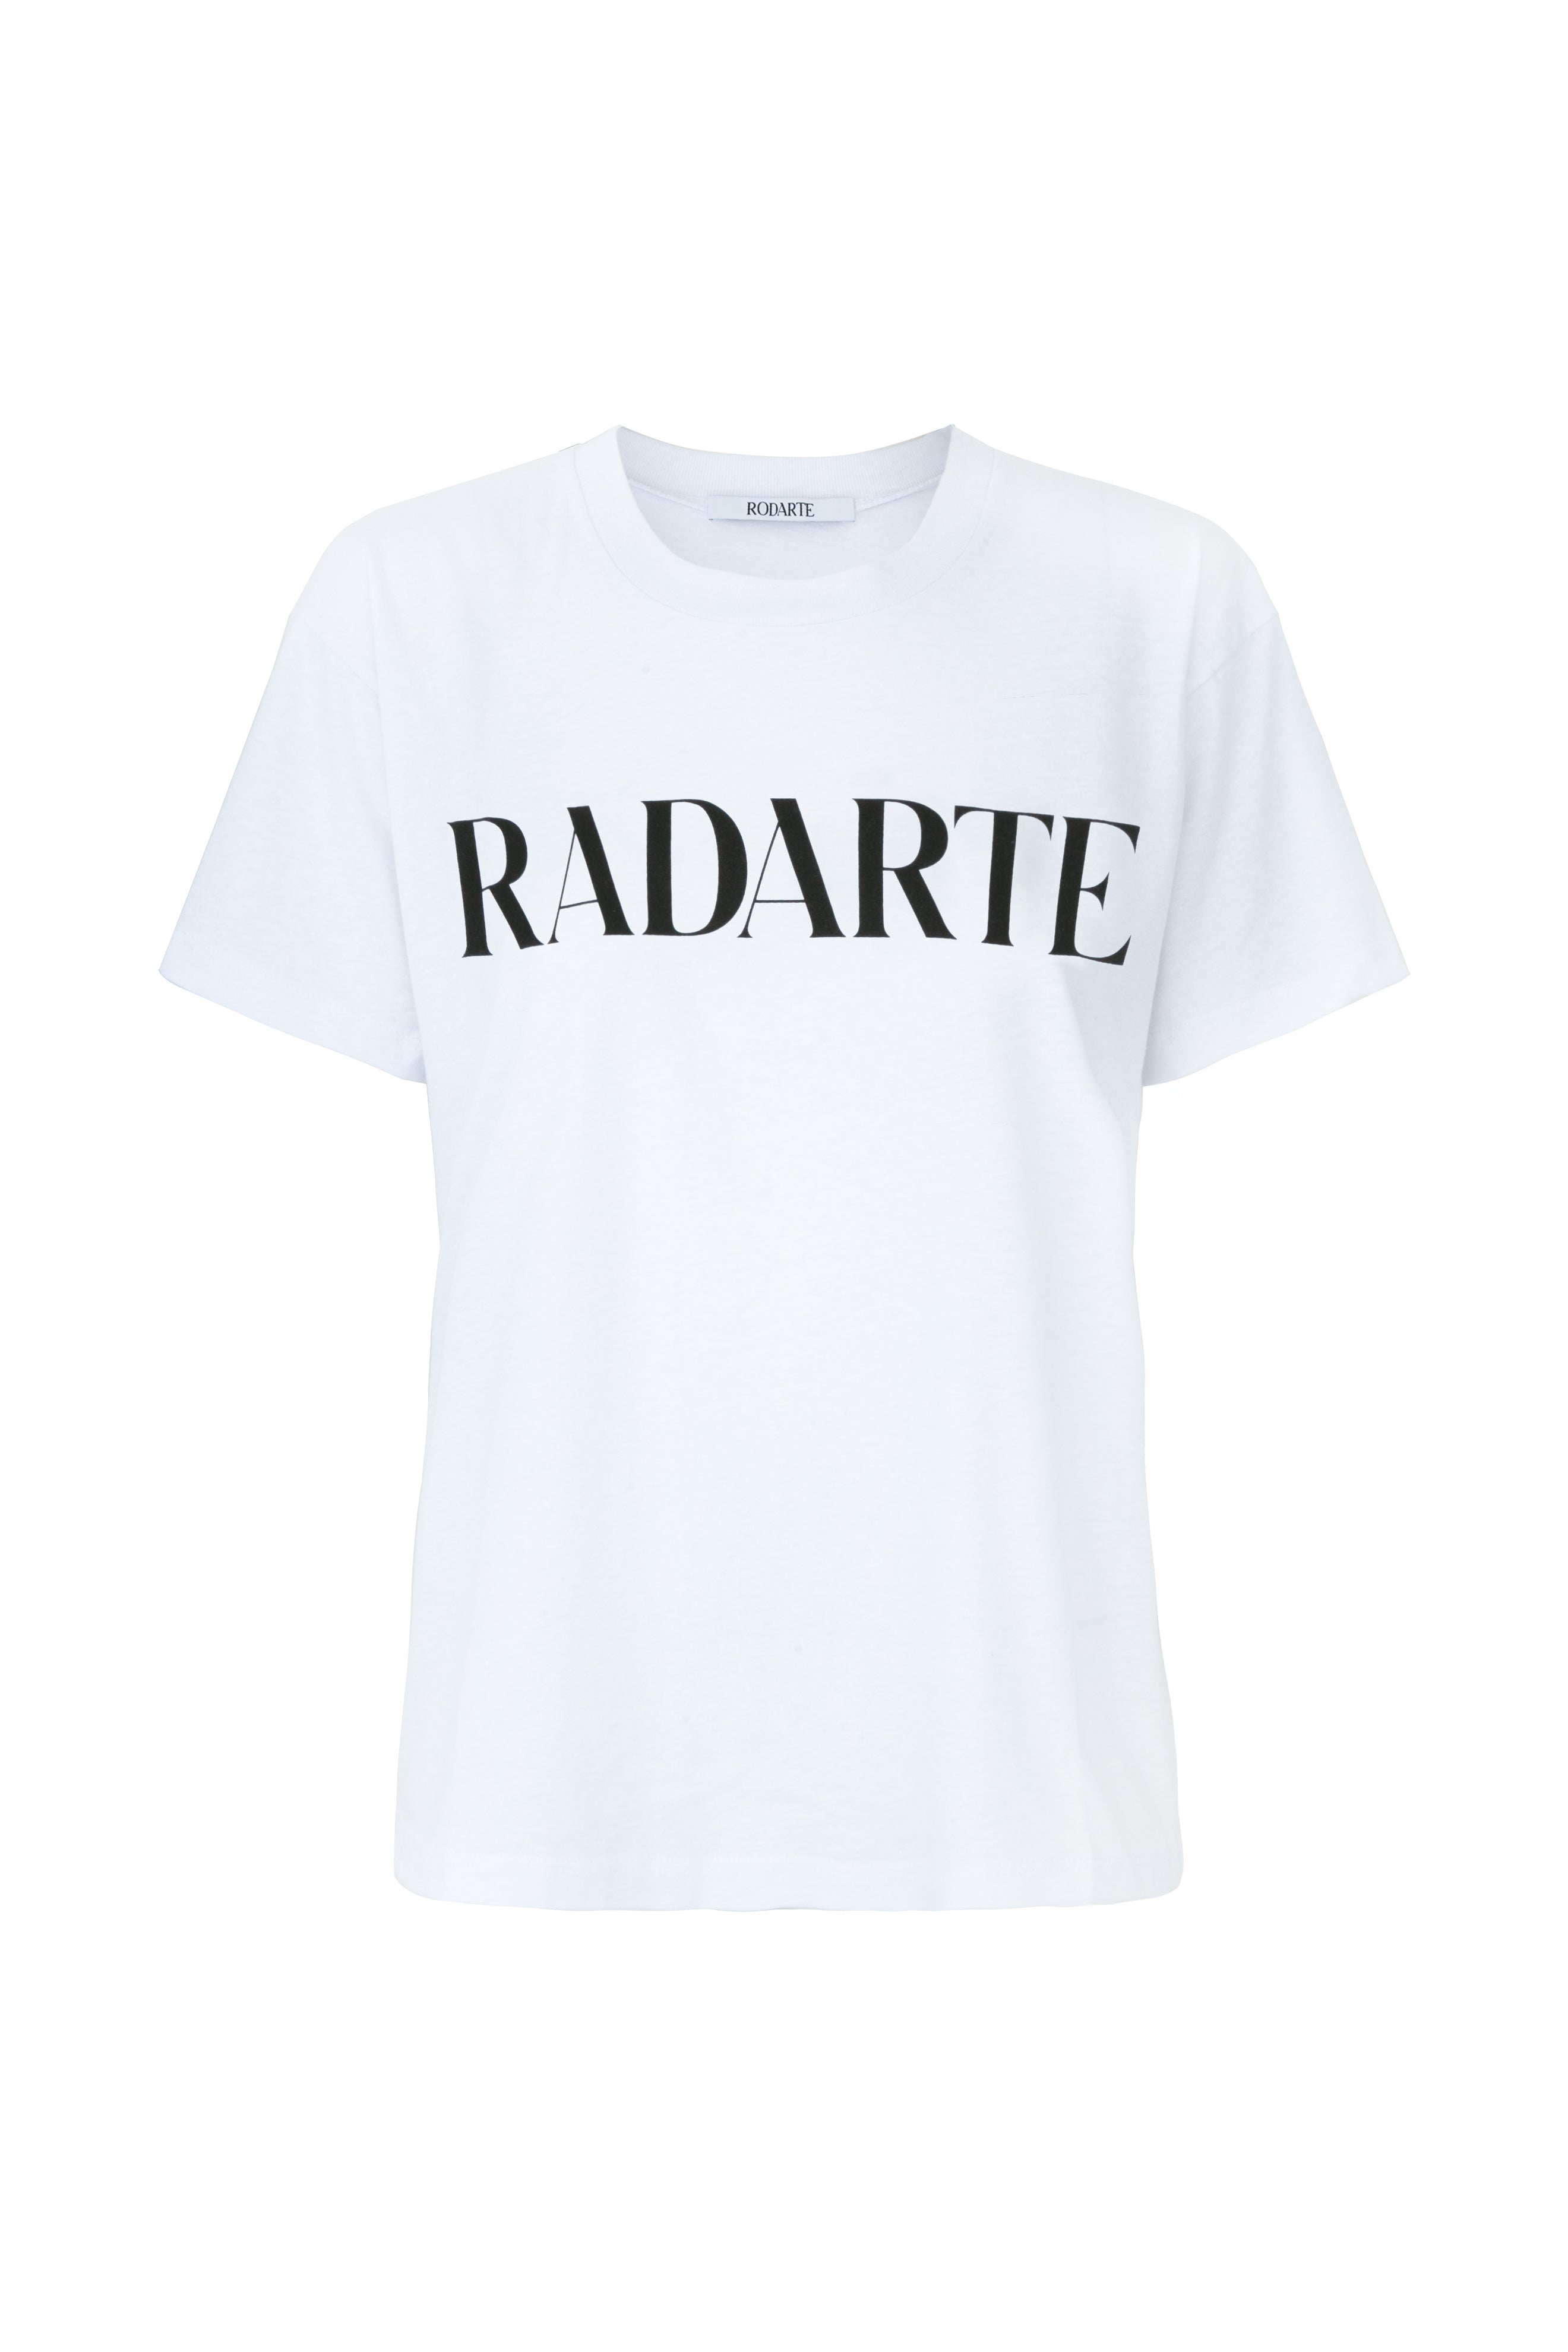 Radarte Large Logo T-Shirt – Rodarte